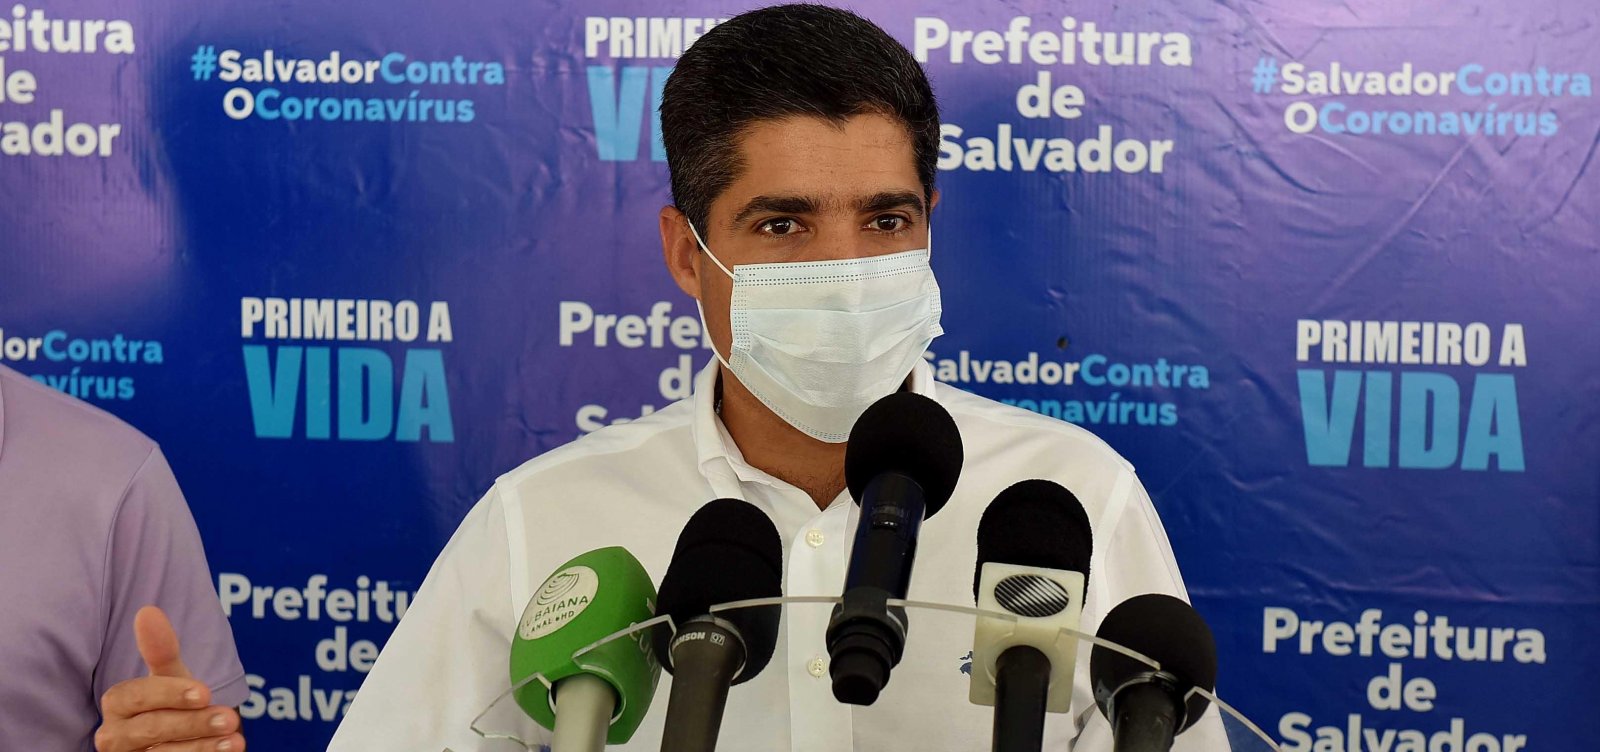 Salvador tem média de quatro mortes por coronavírus diárias